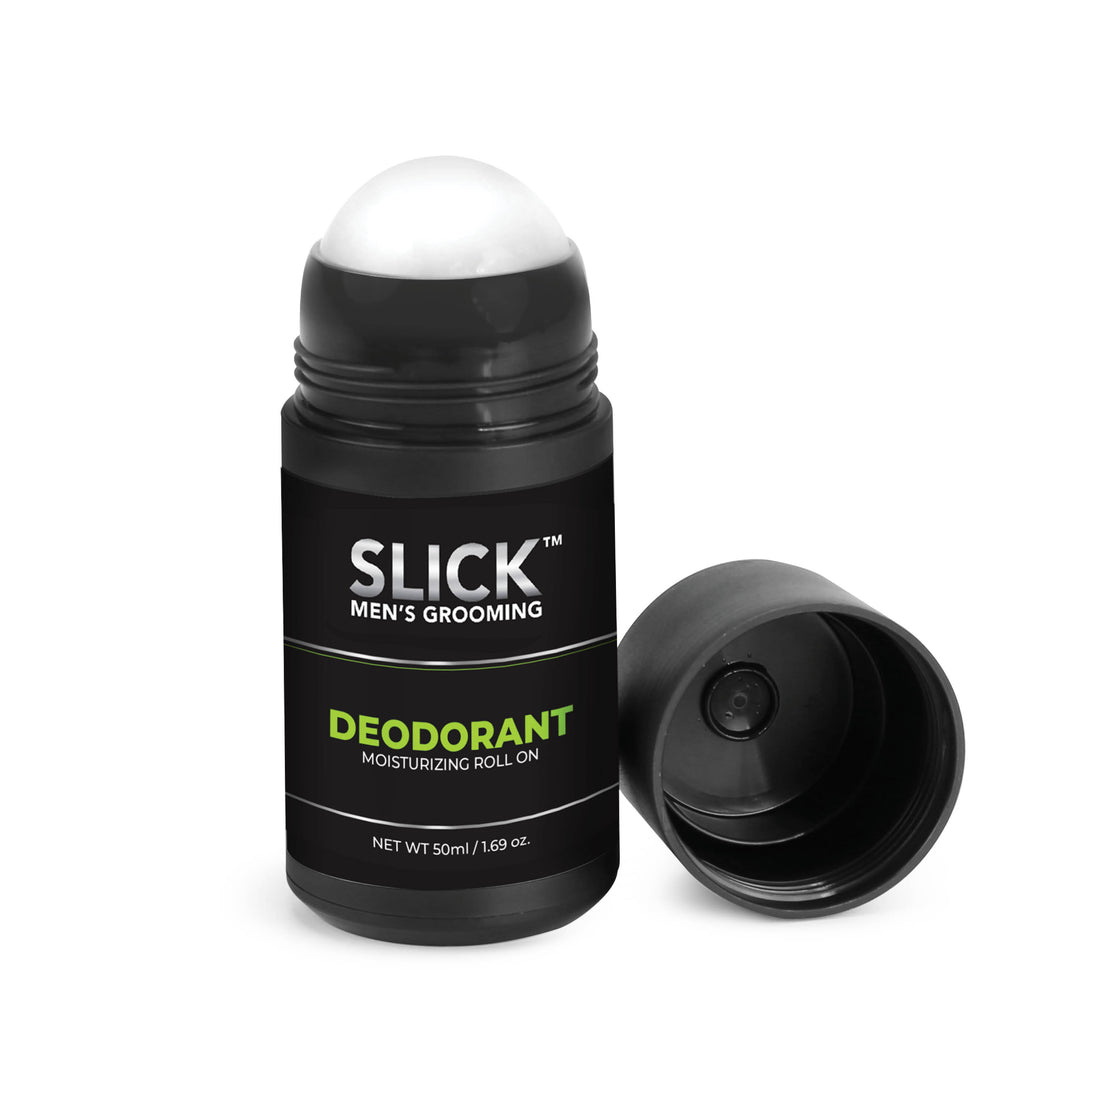 REFRESH Roll On Deodorant